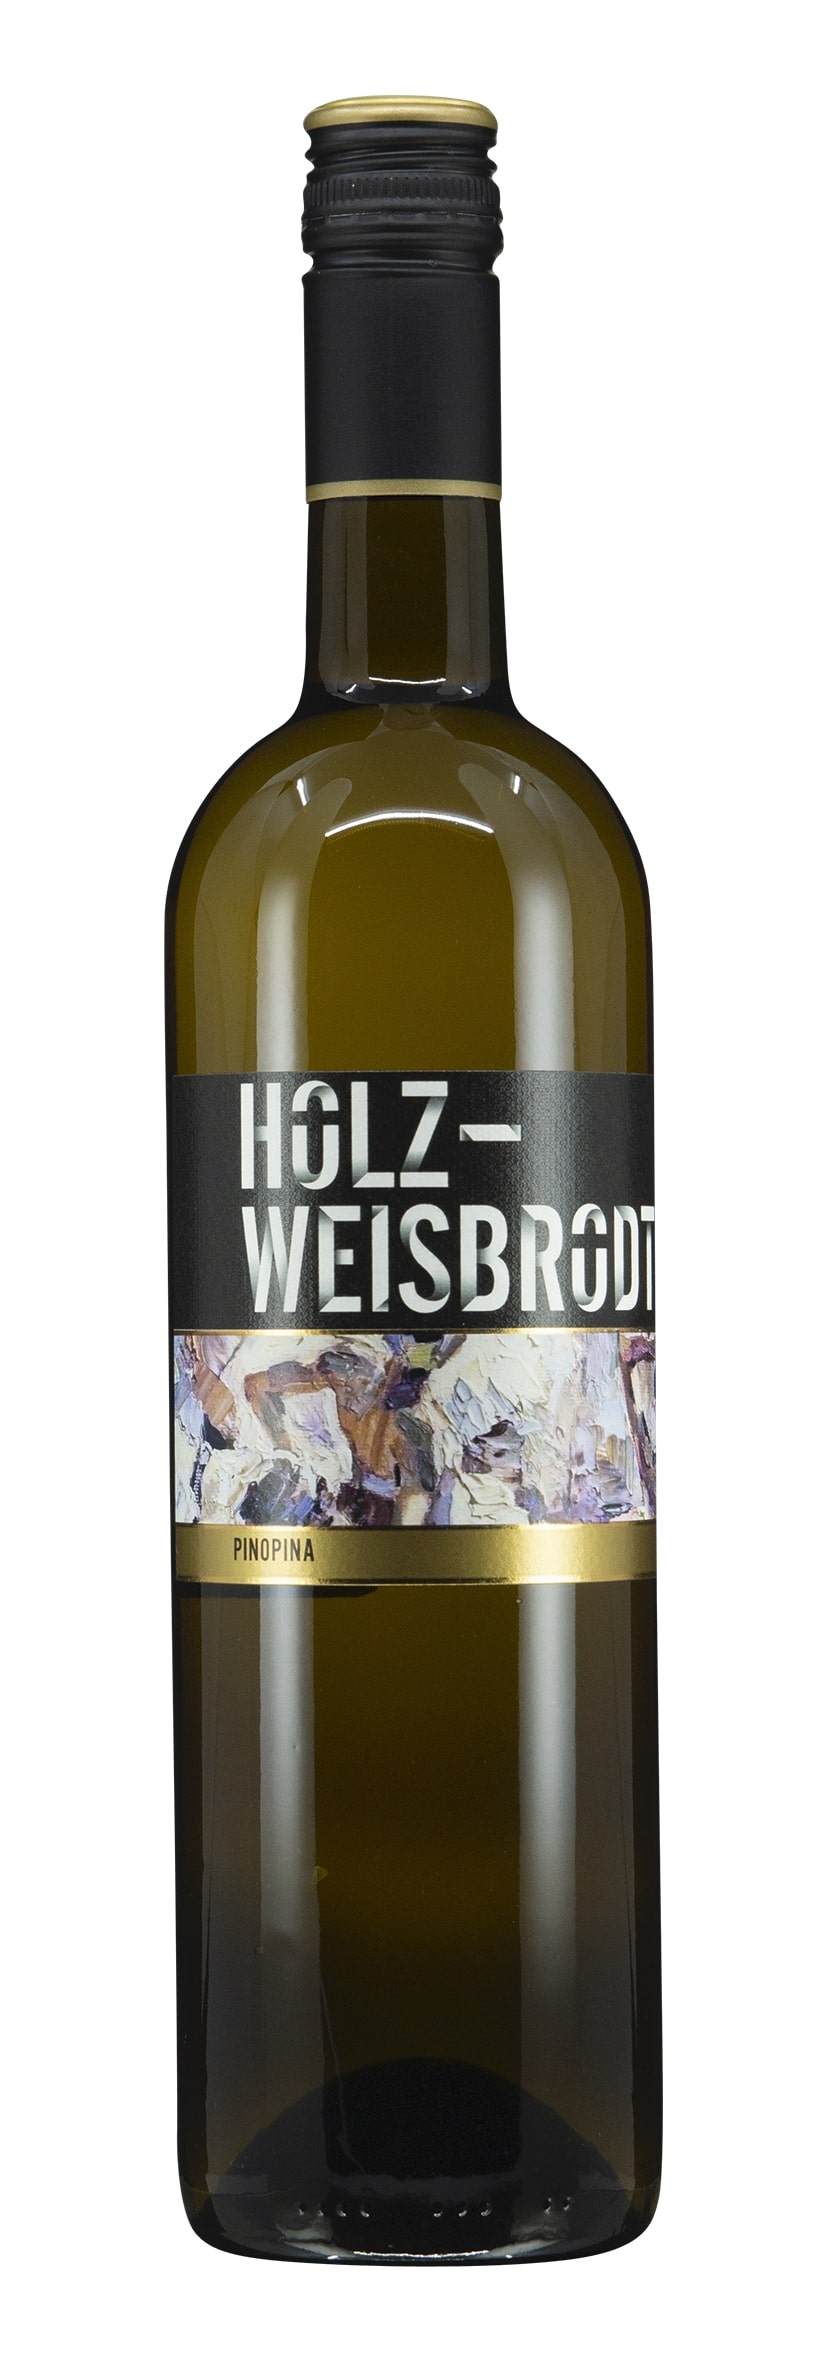 Pfalz Chardonnay Weissburgunder Pinopina 2021